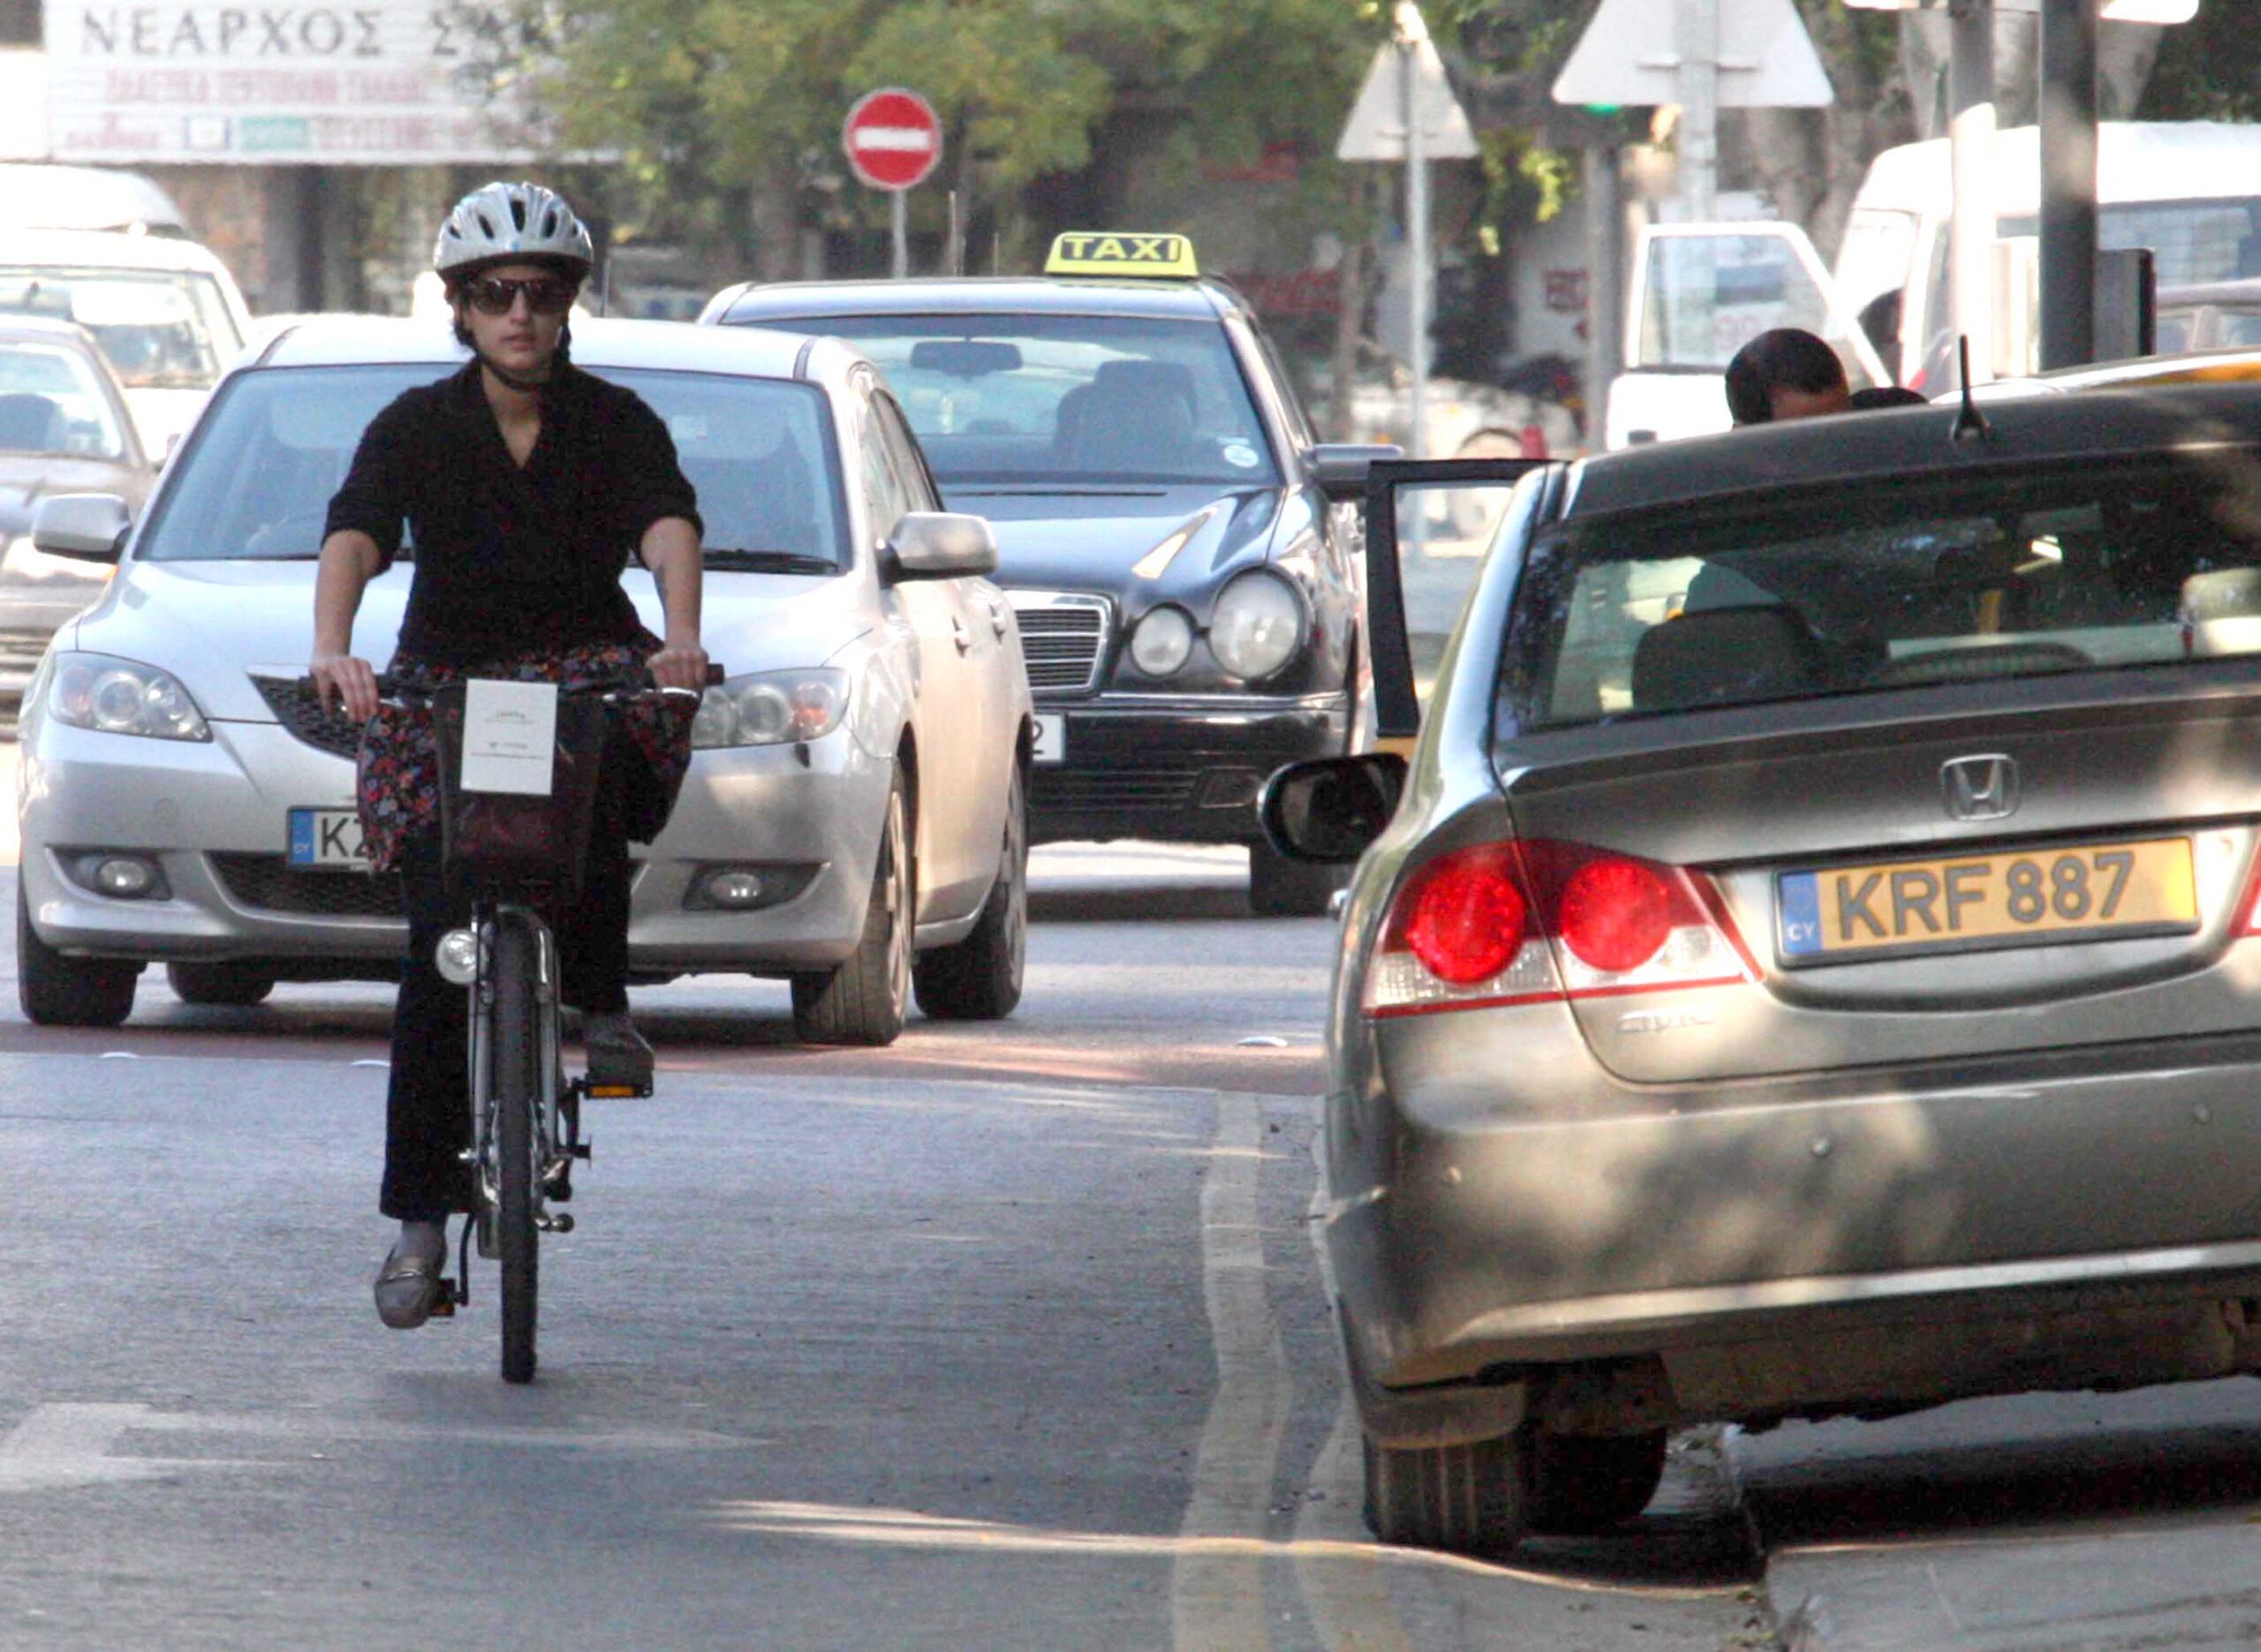 Το όριο ταχύτητας μειώνεται στα 30km / h σε ορισμένους δρόμους της πόλης